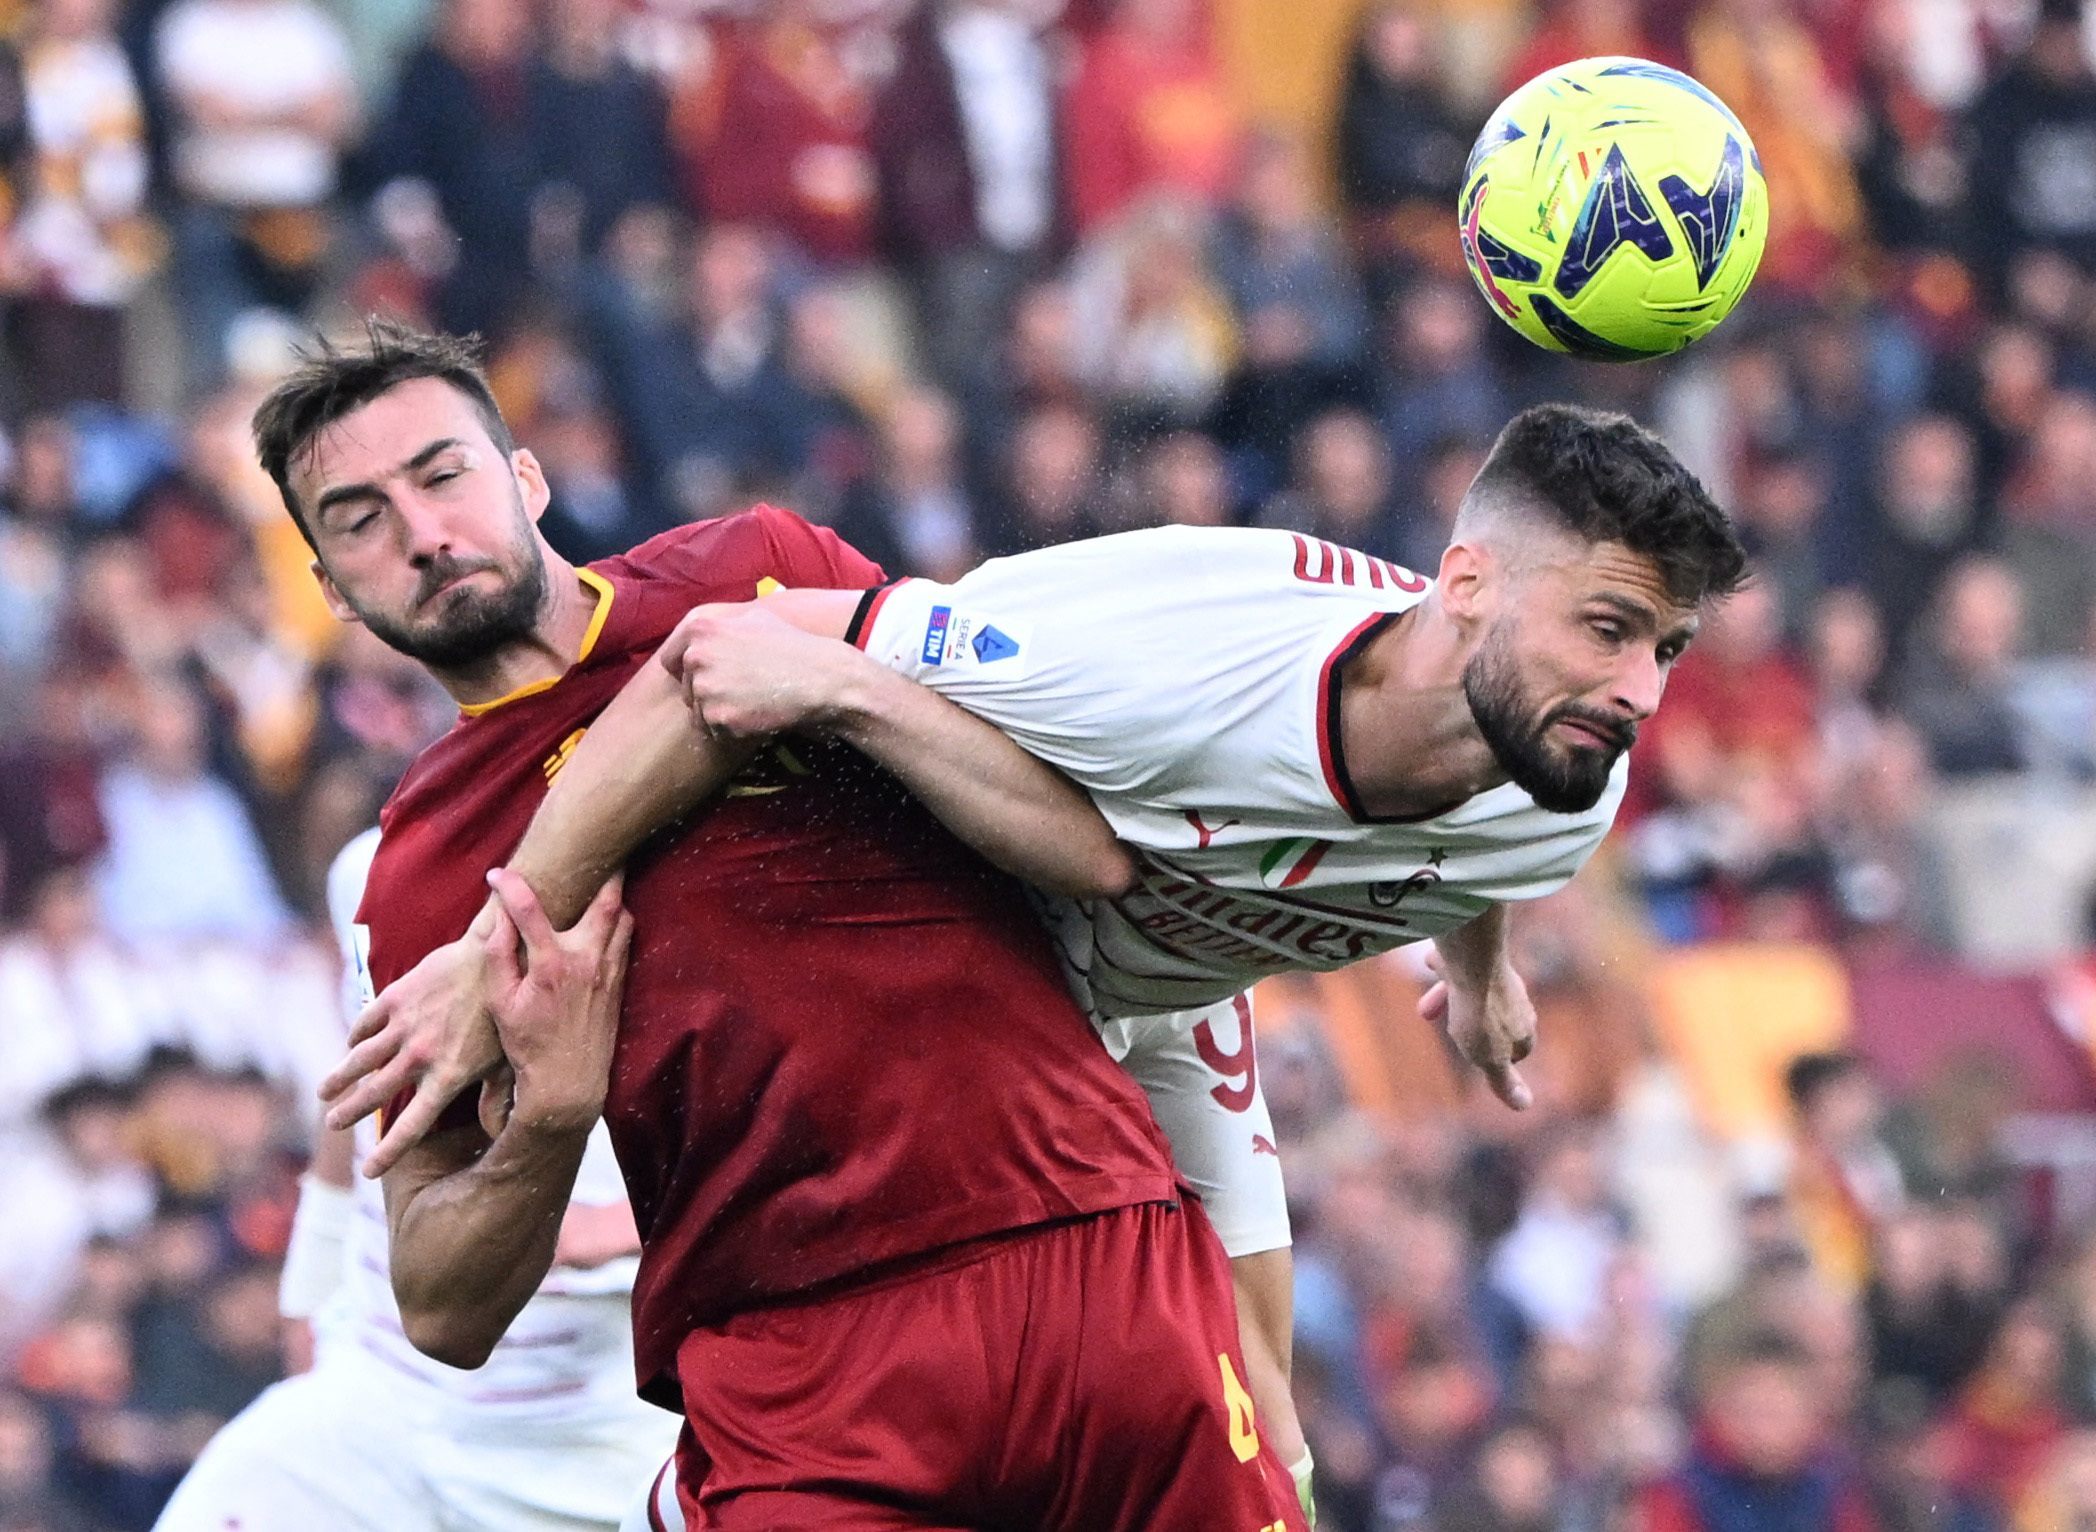 Ρόμα – Μίλαν 1-1: Ισοπαλία μετά από απίθανο φινάλε στο ντέρμπι της Serie A